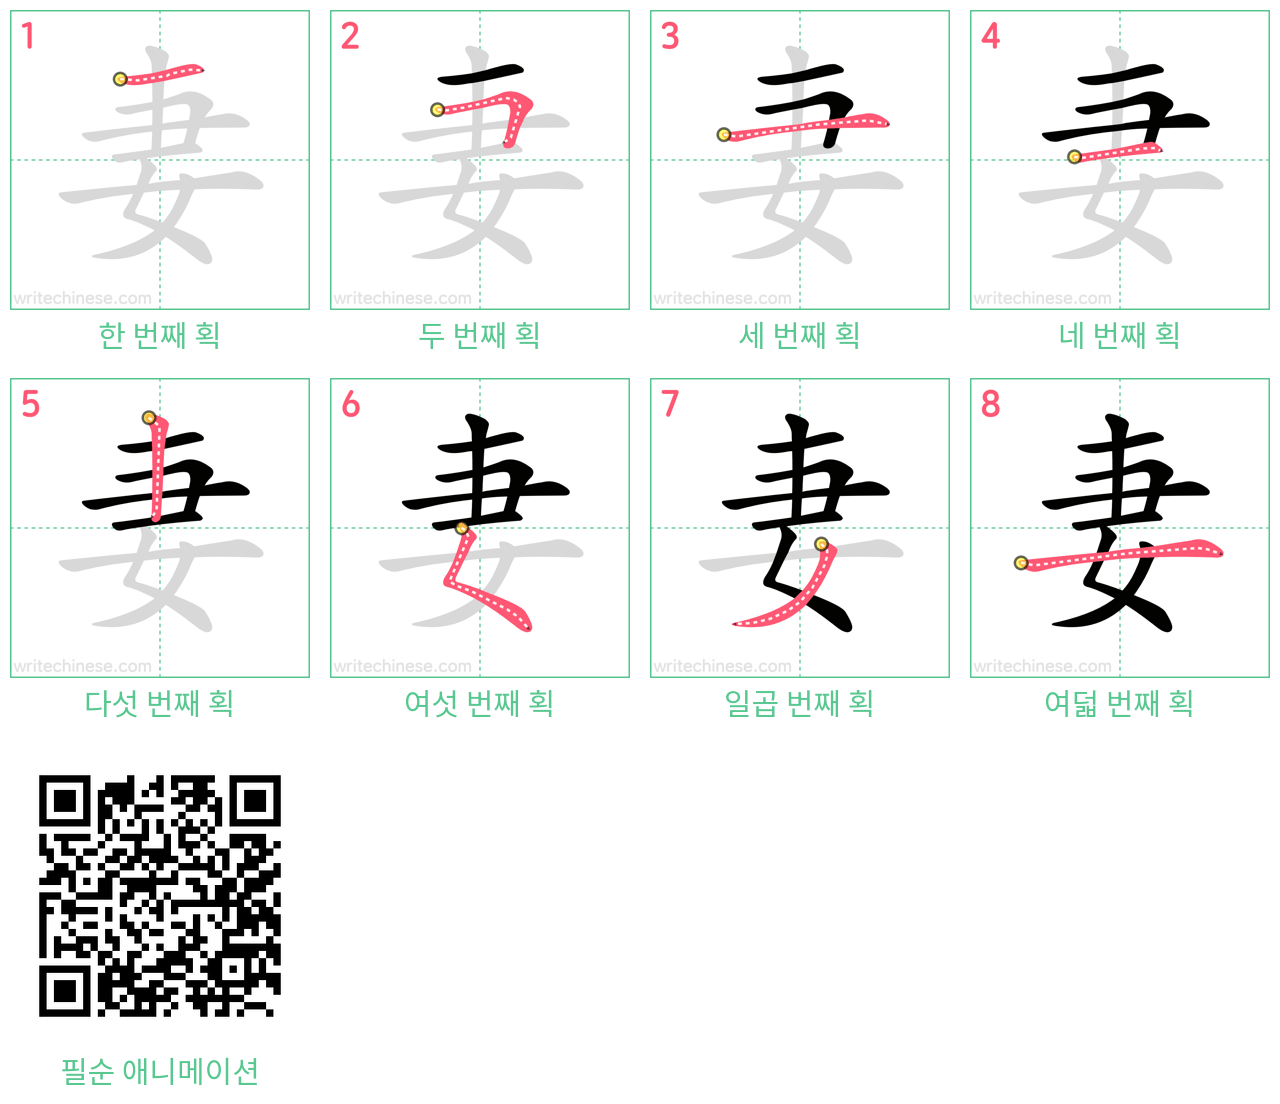 妻 step-by-step stroke order diagrams